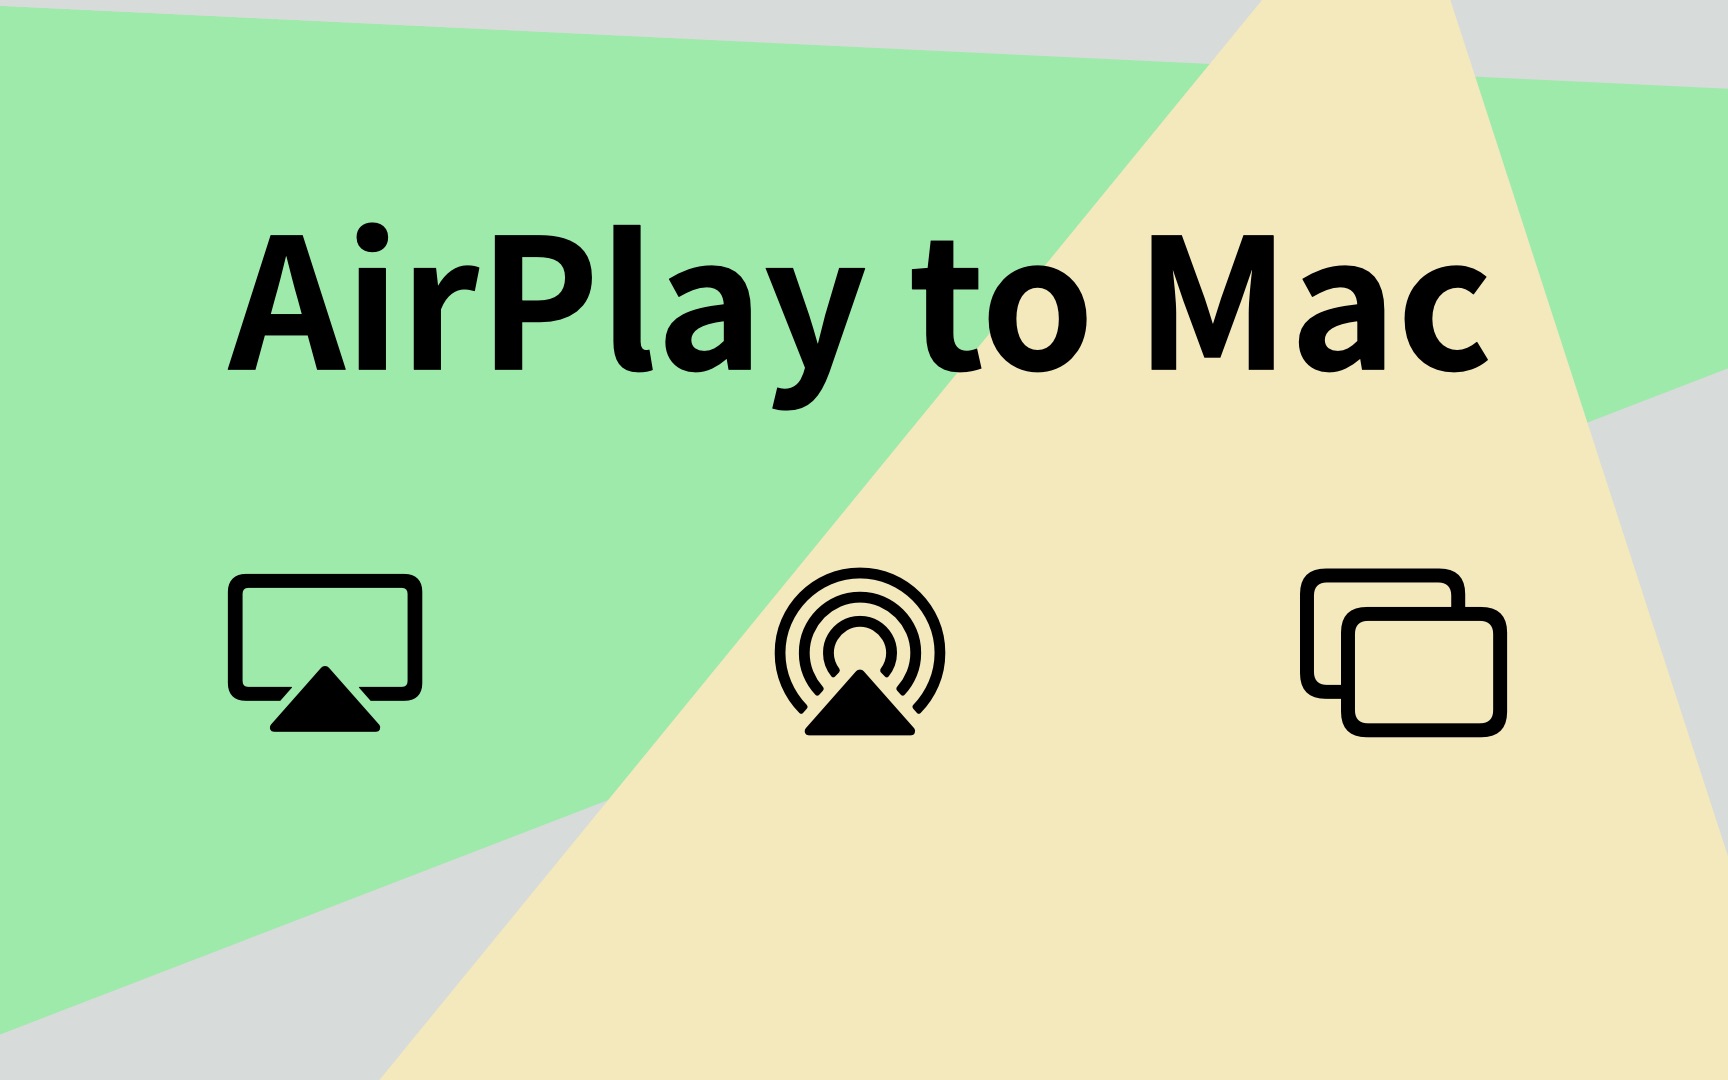 隔空播放（AirPlay）到 Mac 实用技巧分享 ---- macOS Monterey 8 大核心功能讲解系列（其七）